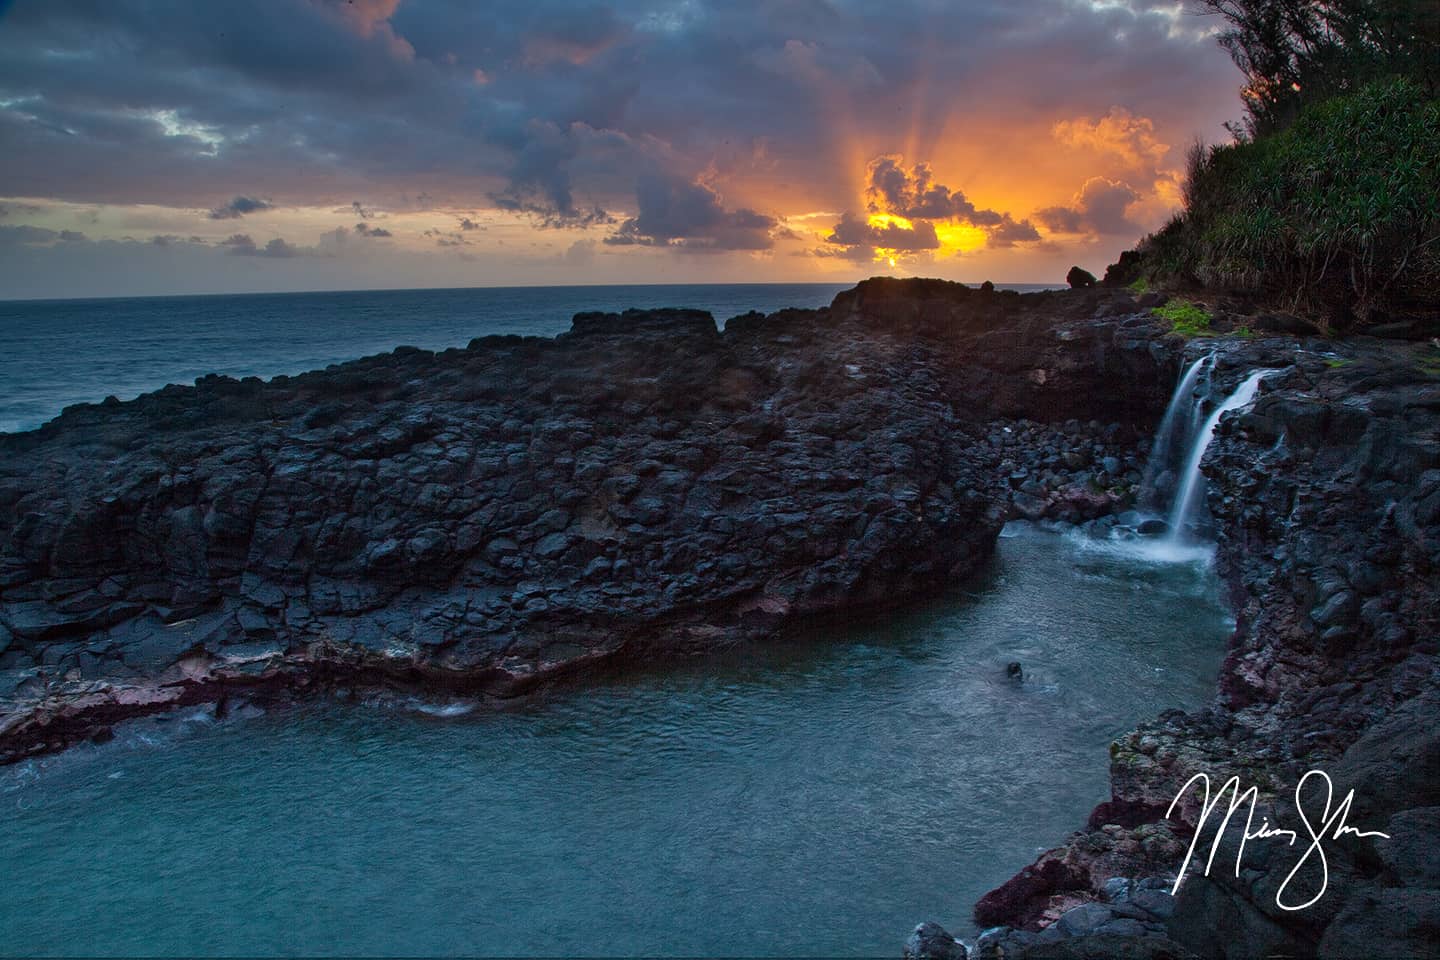 Sunrise at the Queen's Bath - Queen's Bath, Princeville, Kauai, Hawaii